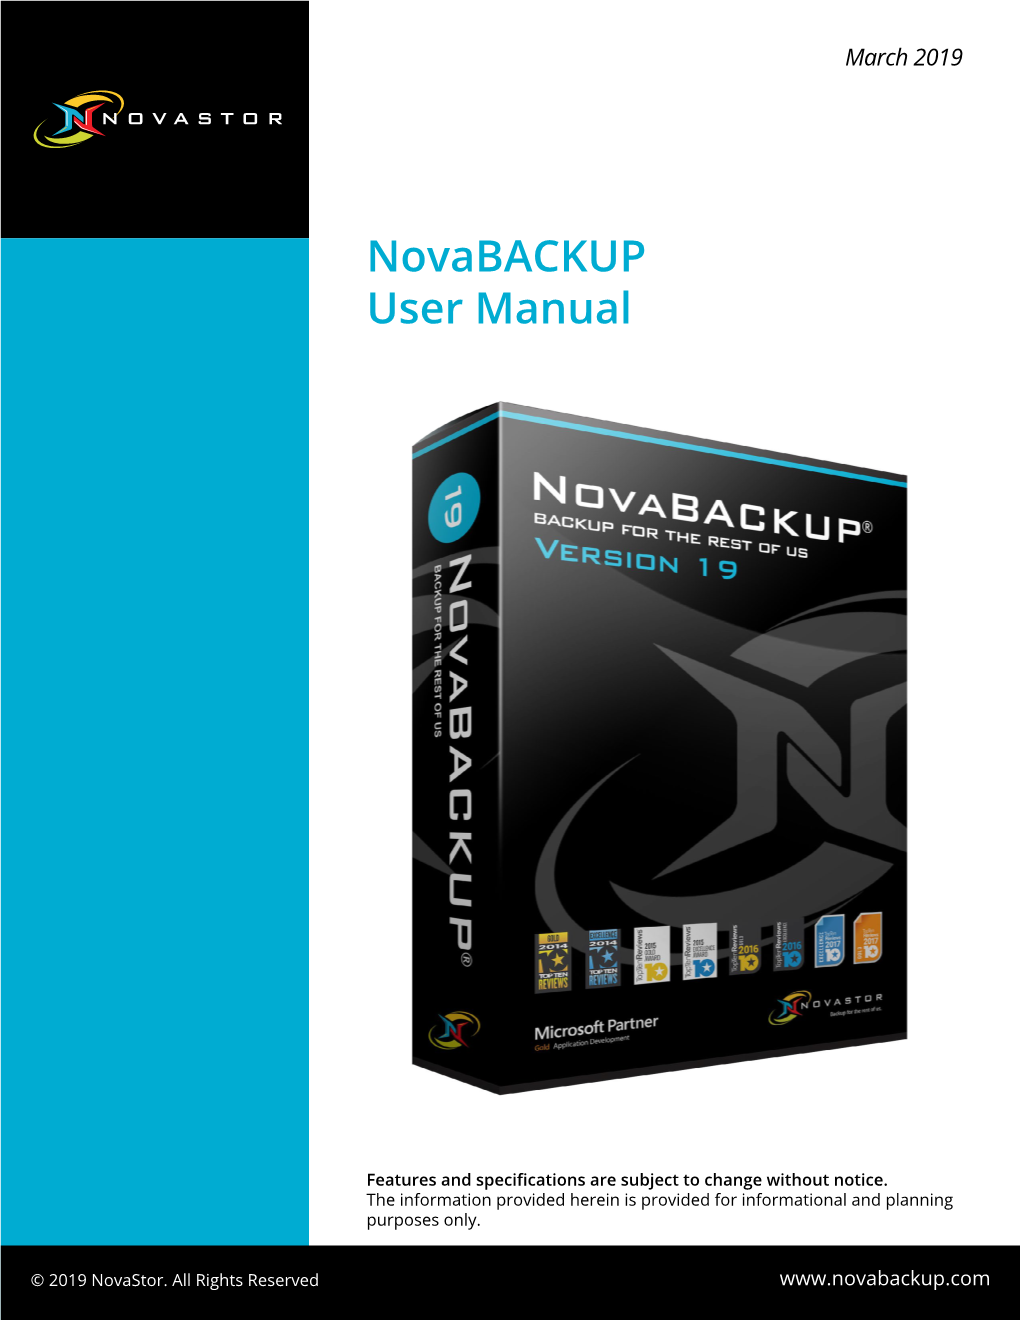 Novabackup User Manual